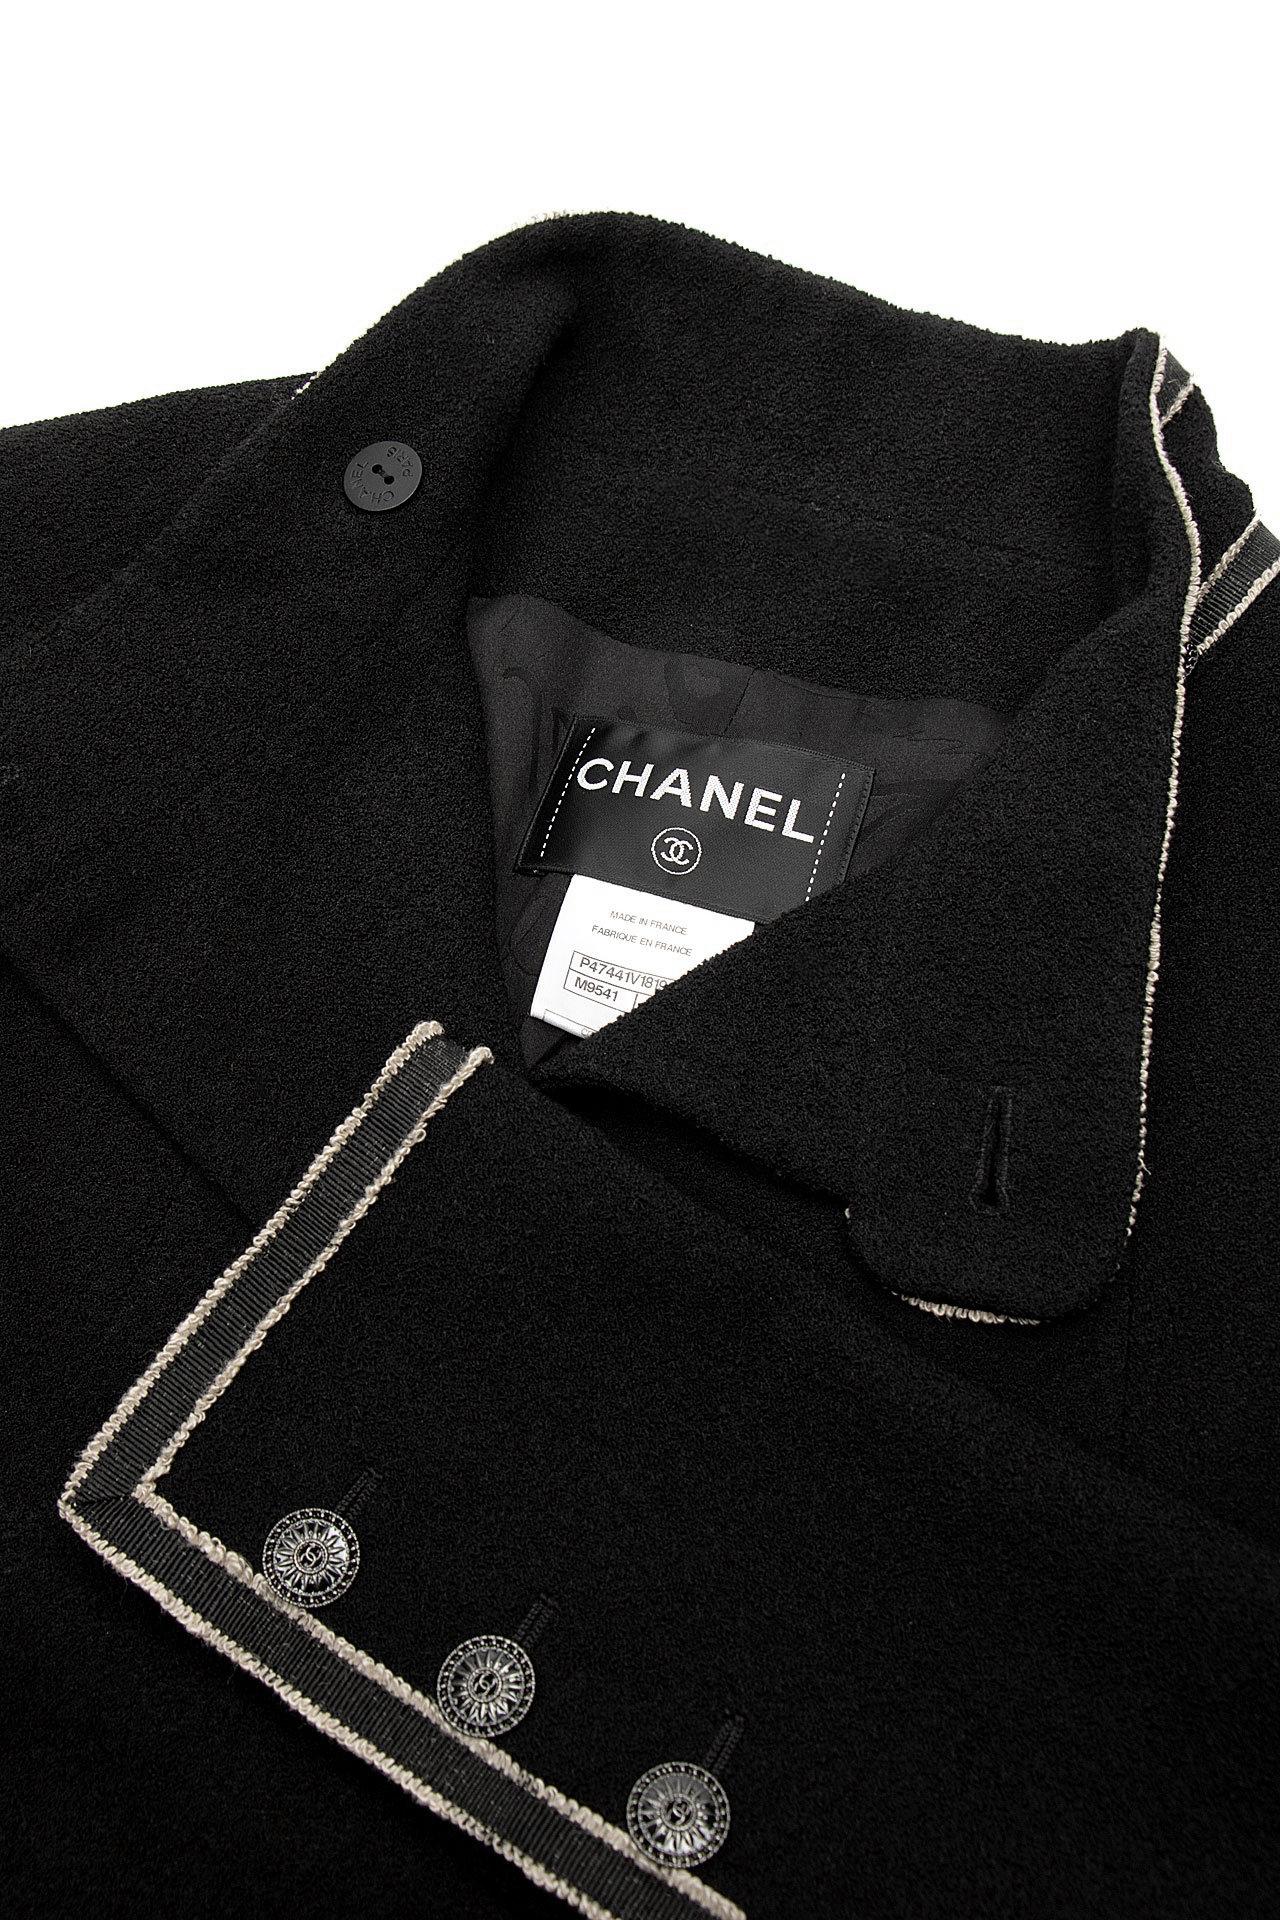 Chanel Paris / Singapur Laufsteg Schwarzer Tweed-Mantel 5